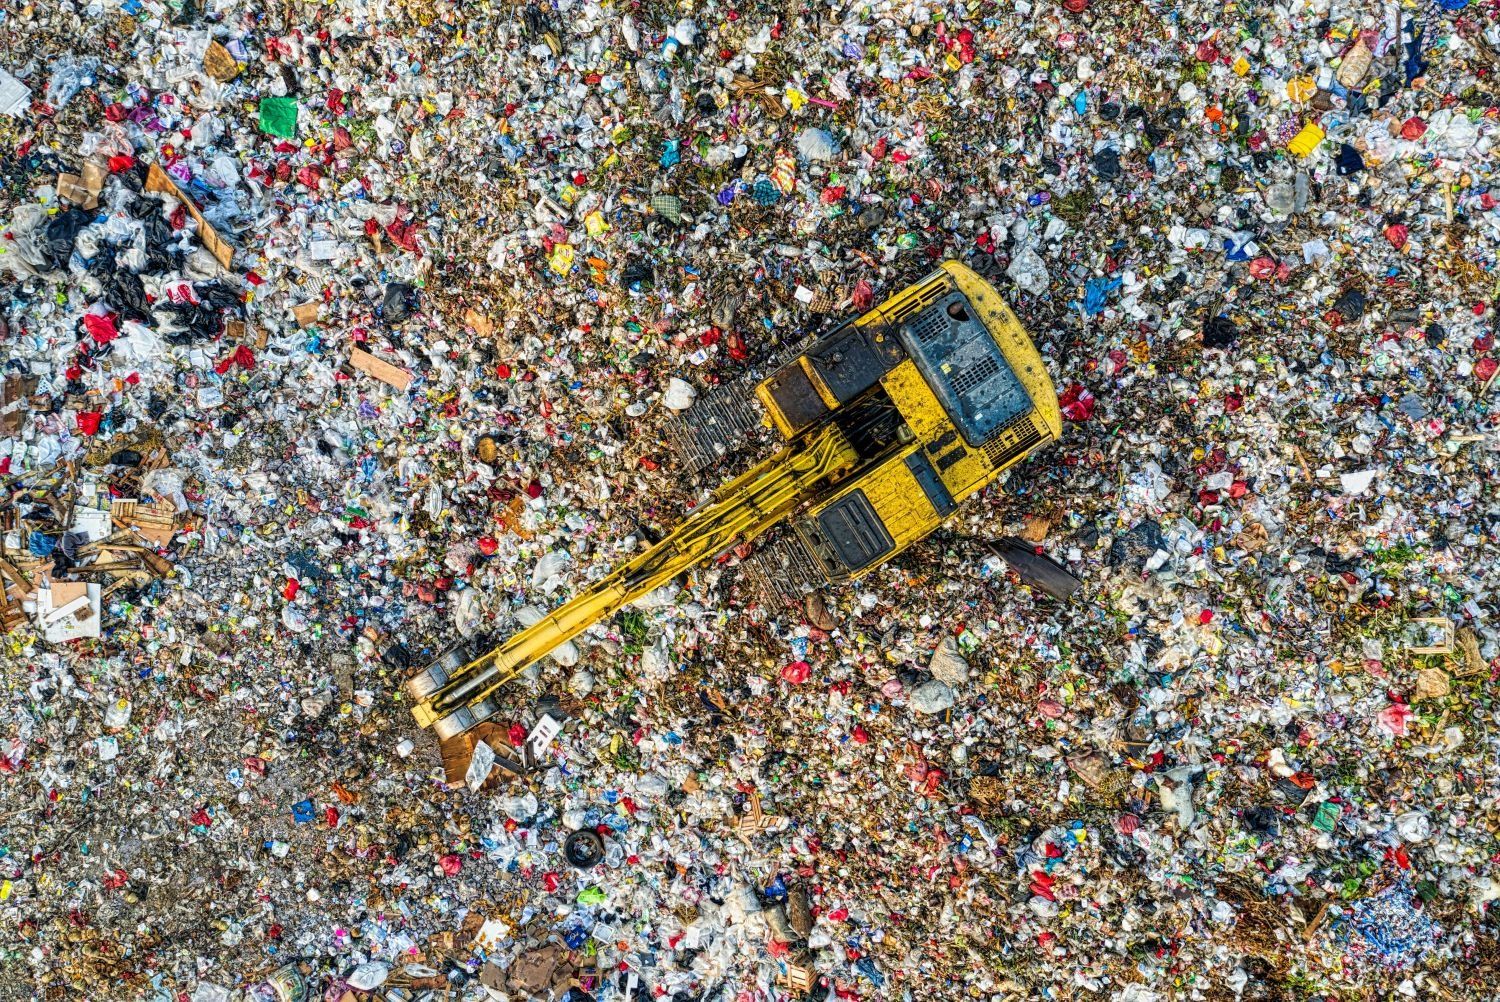 Greenwashing: ezt terjesztik az egyszer használatos műanyagokról